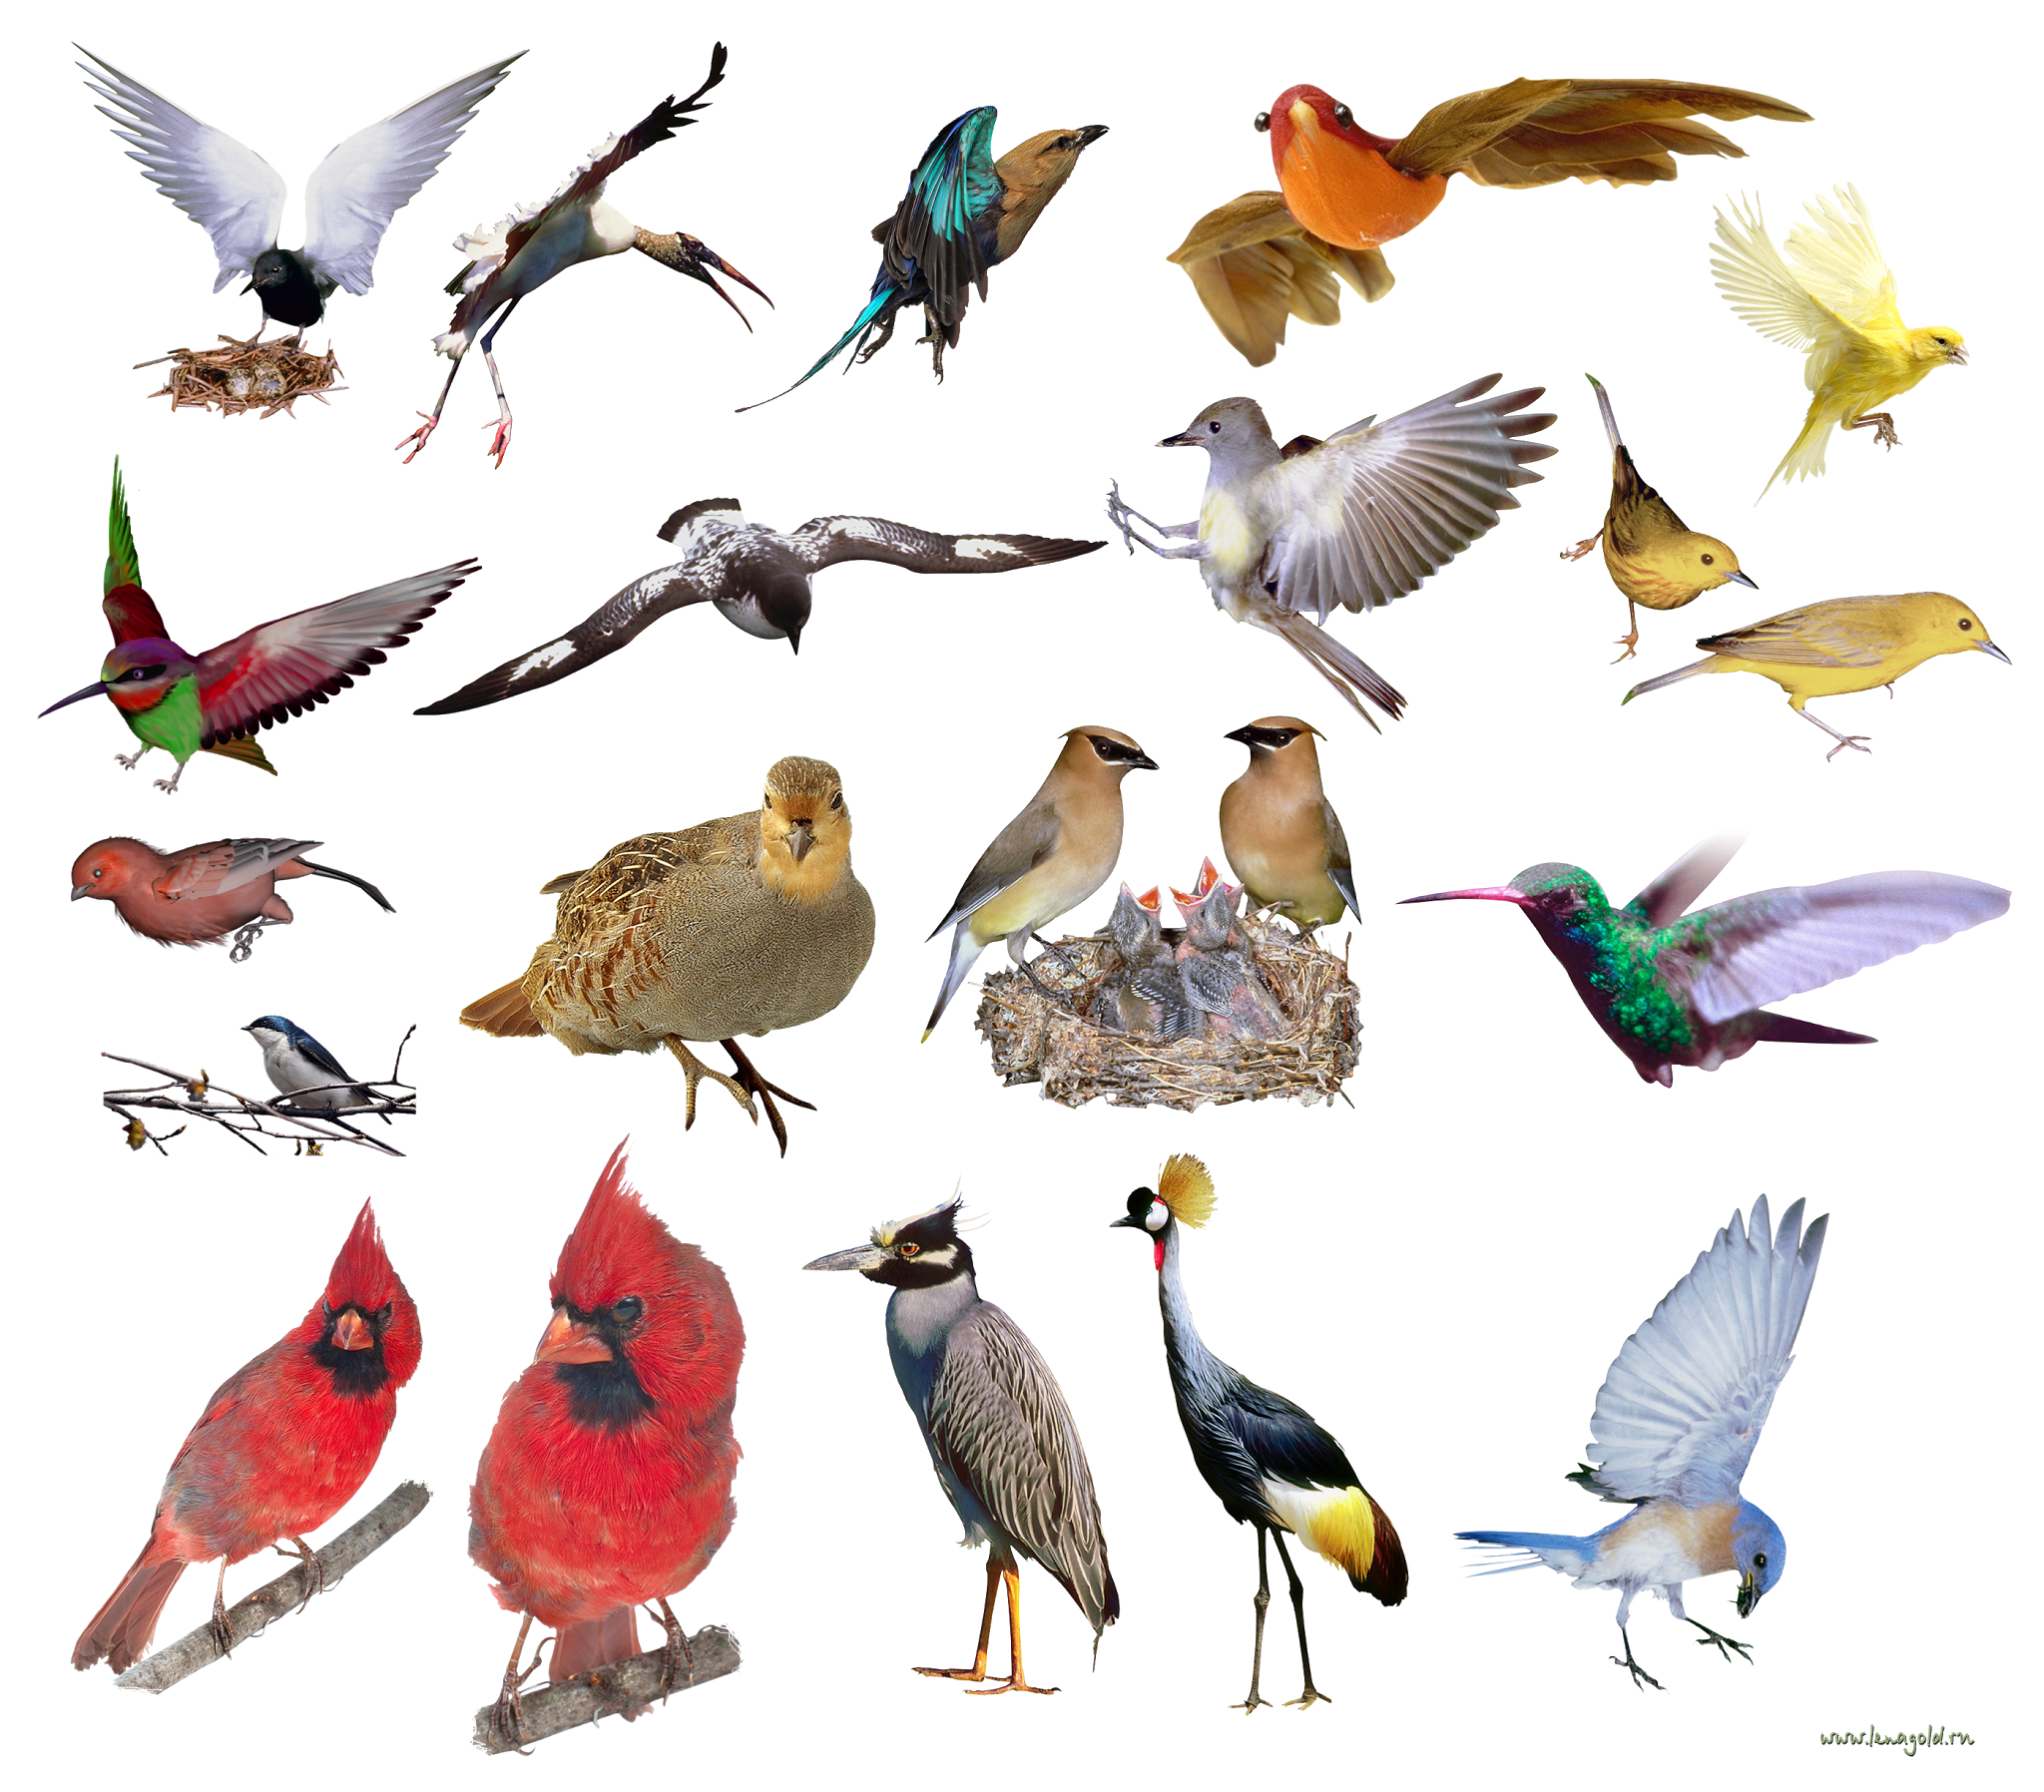 Разнообразие видов птиц. Разные птицы. Множество птиц. Птицы картинки. Птичка на белом фоне.